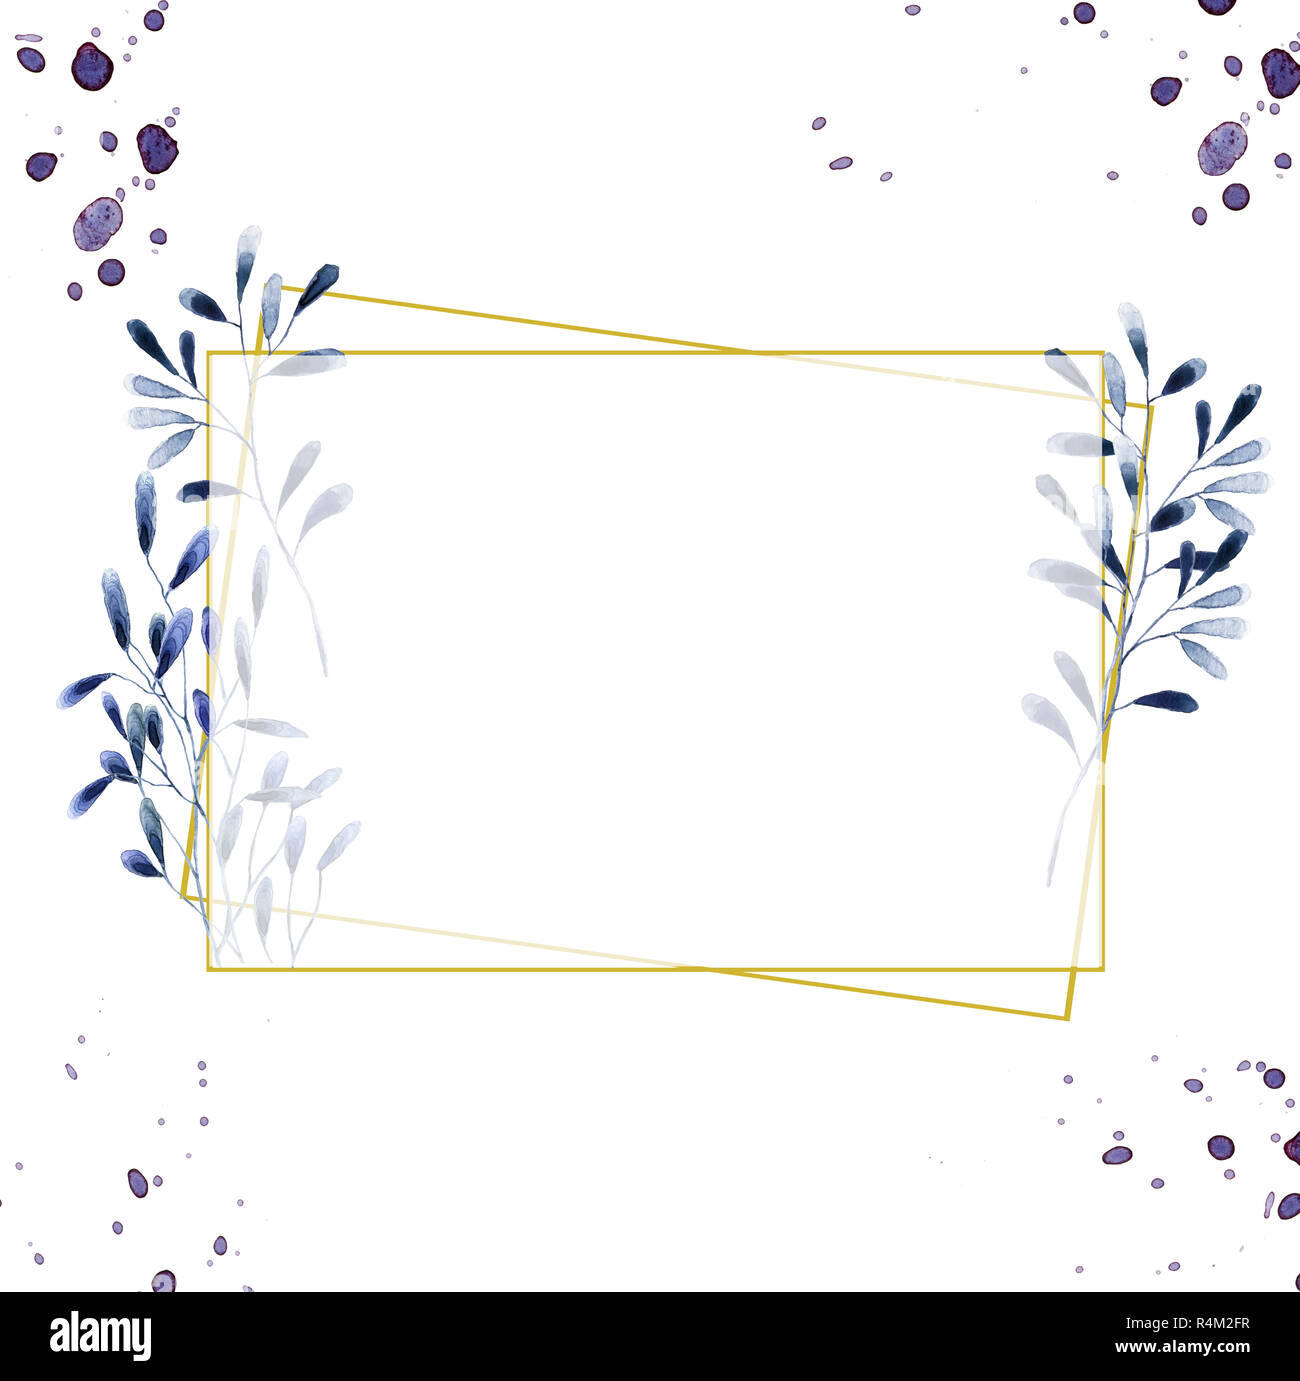 Invitation de mariage, carte d'olive, inviter floral floral et géométrique magnolia cadre doré imprimer. Rectangle losange cadre. Arrière-plan blanc. Banque D'Images